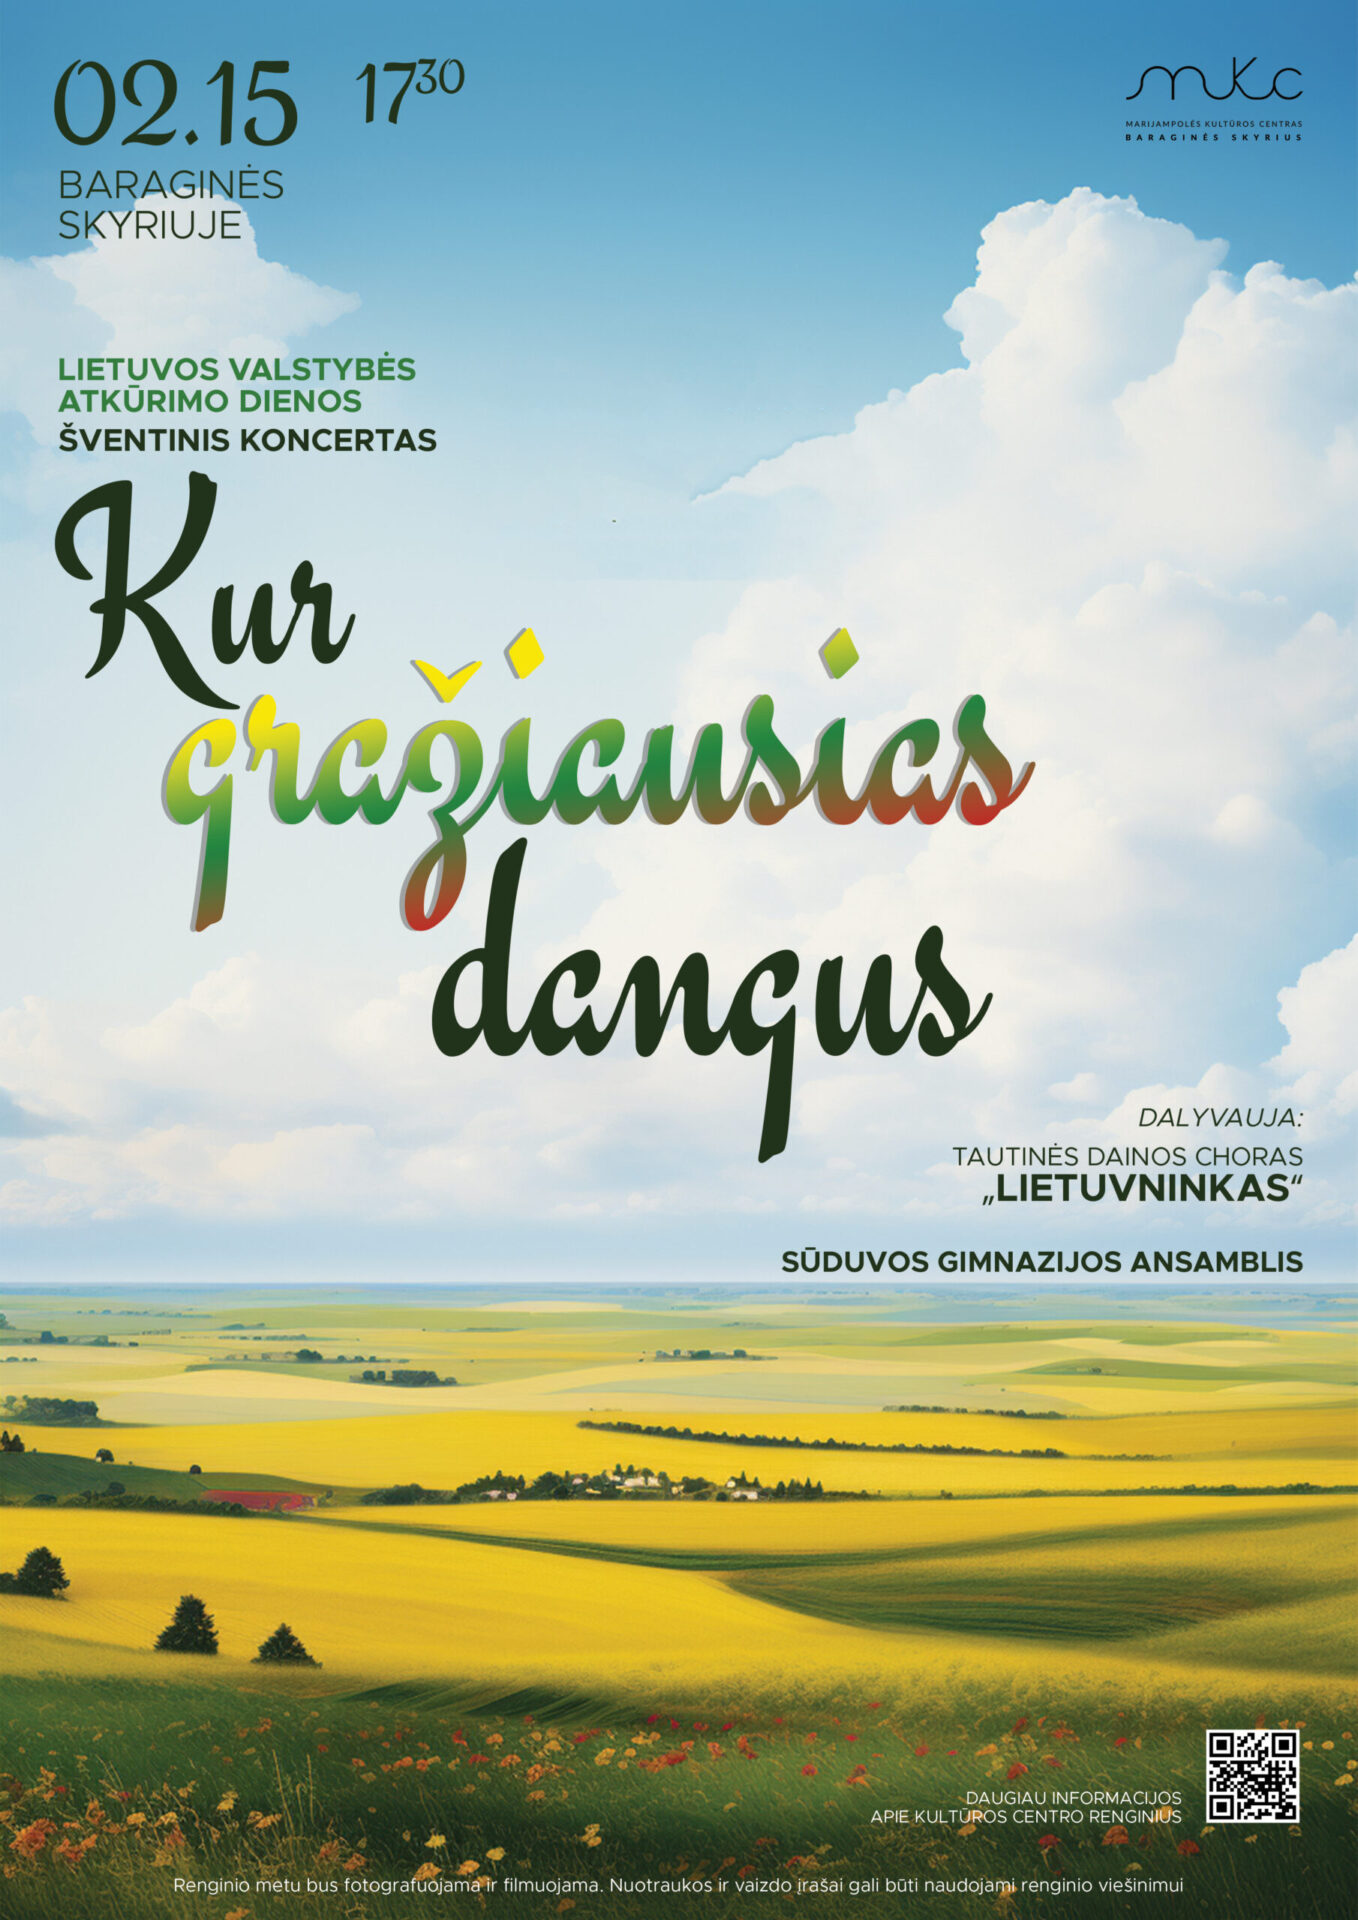 Lietuvos valstybės atkūrimo dienos šventinis koncertas „Kur gražiausias dangus”